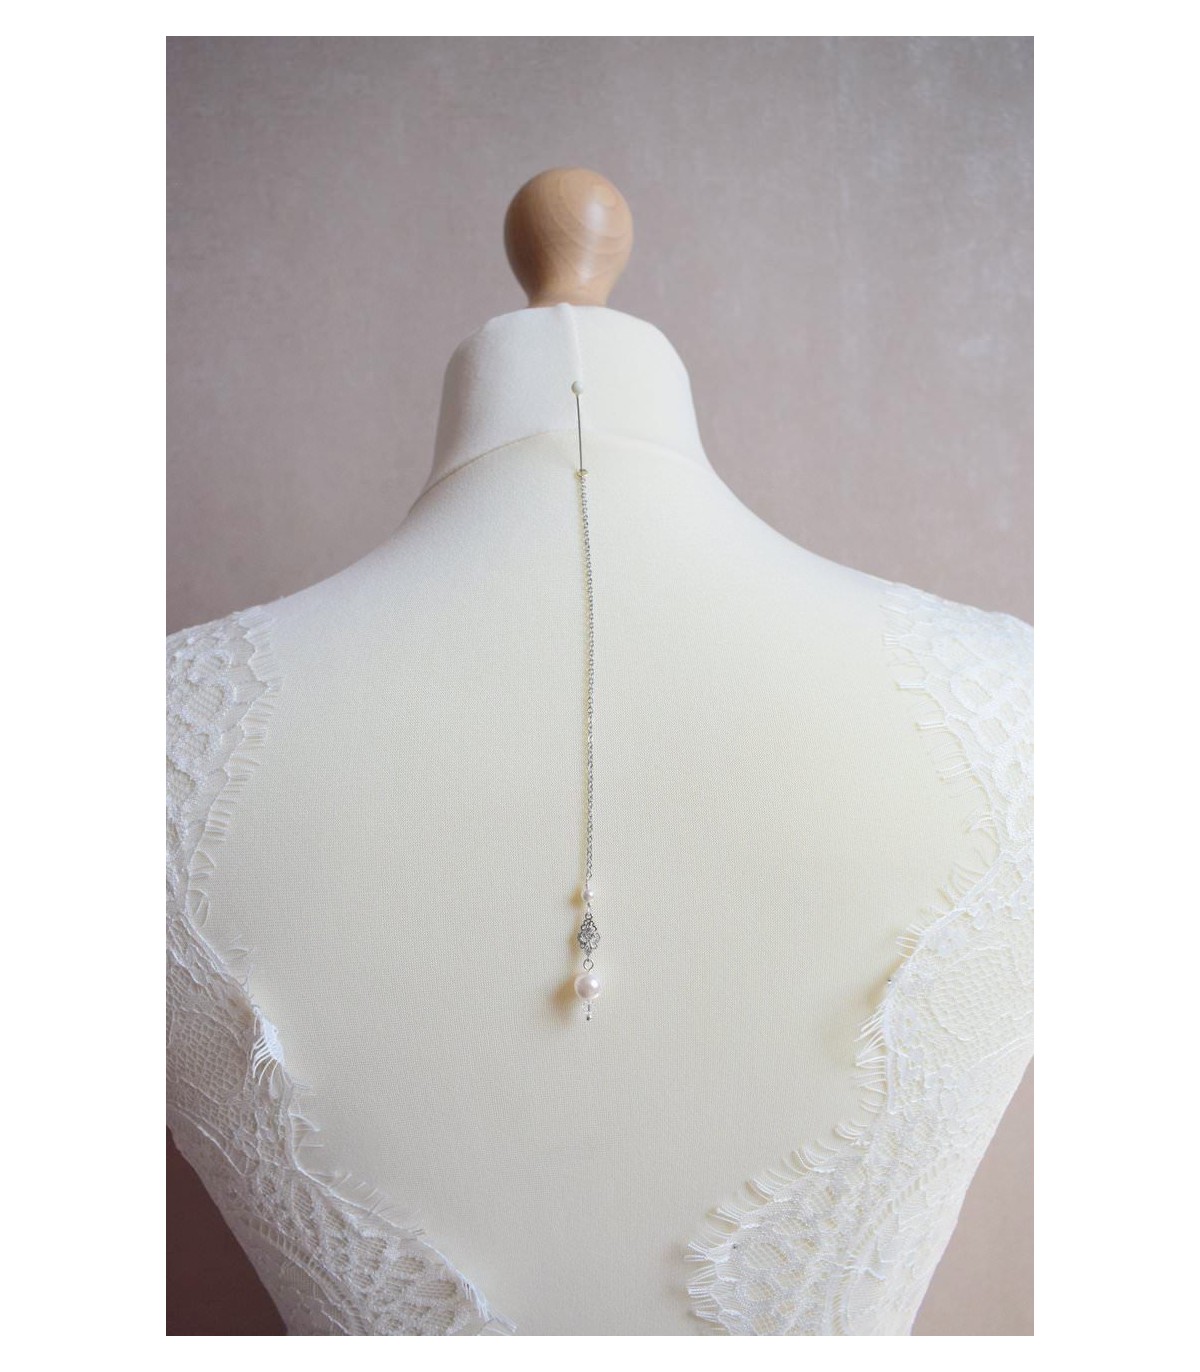 Pendentif de dos de mariage avec des perles et des strass pour habiller le dos nu.